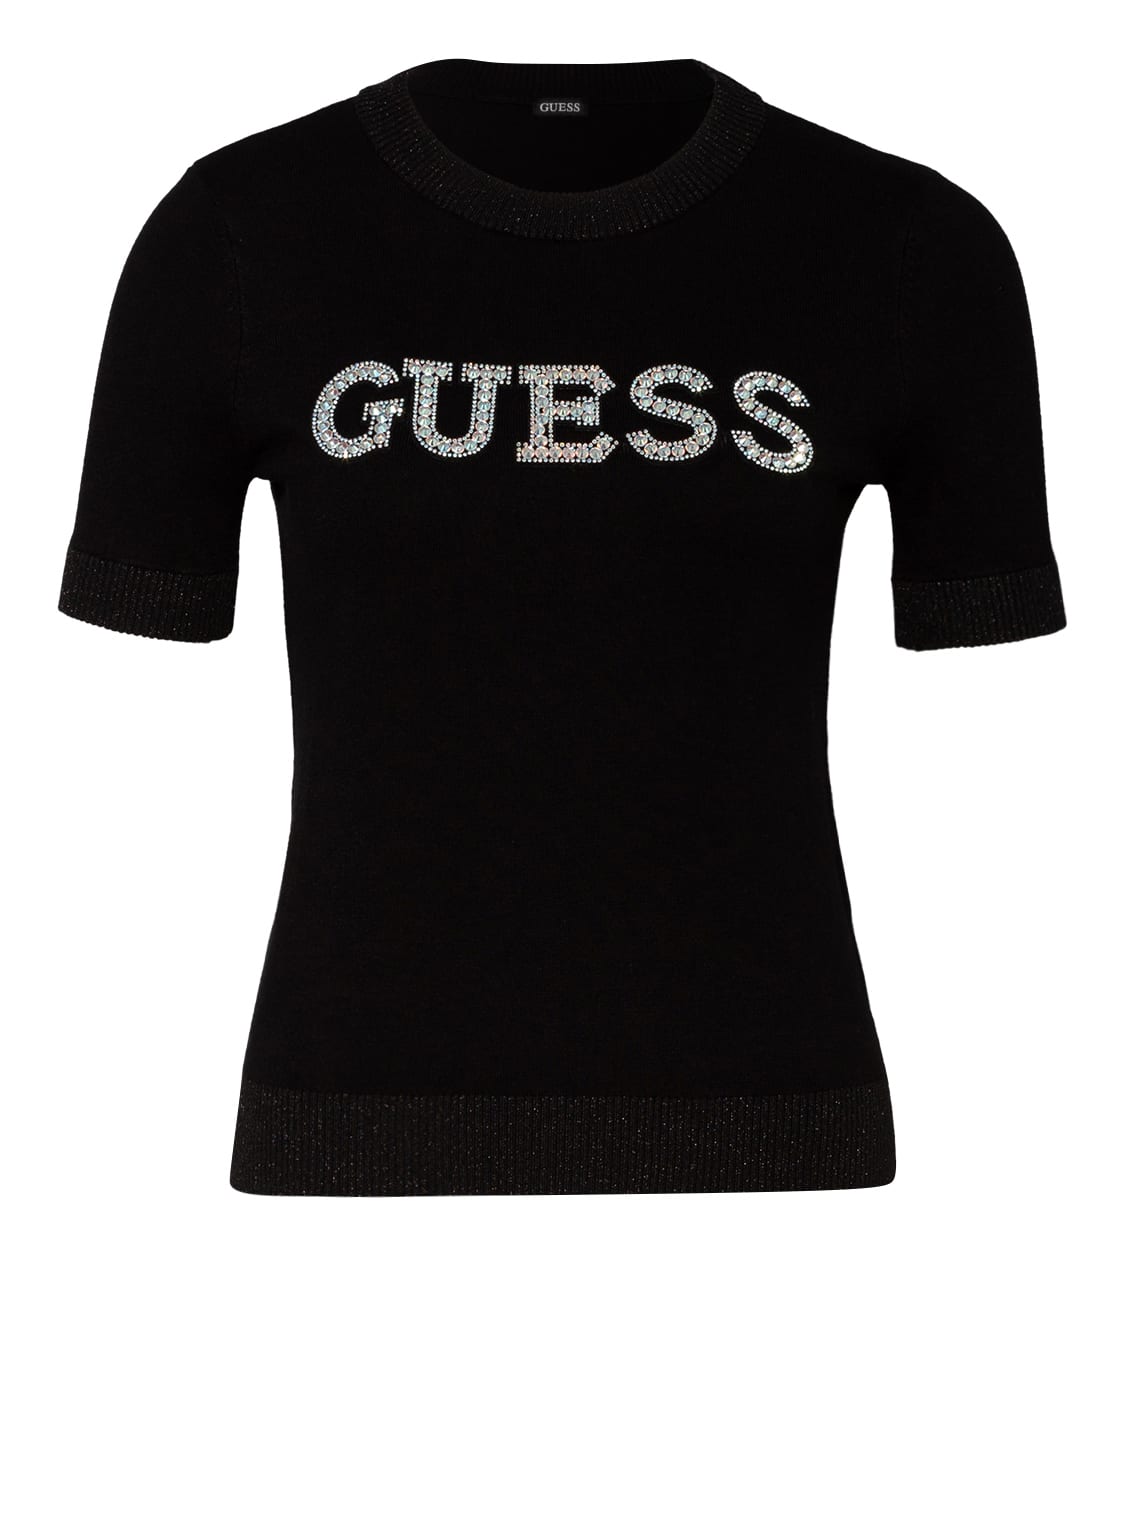 Guess T-Shirt Clarisse Mit Schmucksteinbesatz schwarz